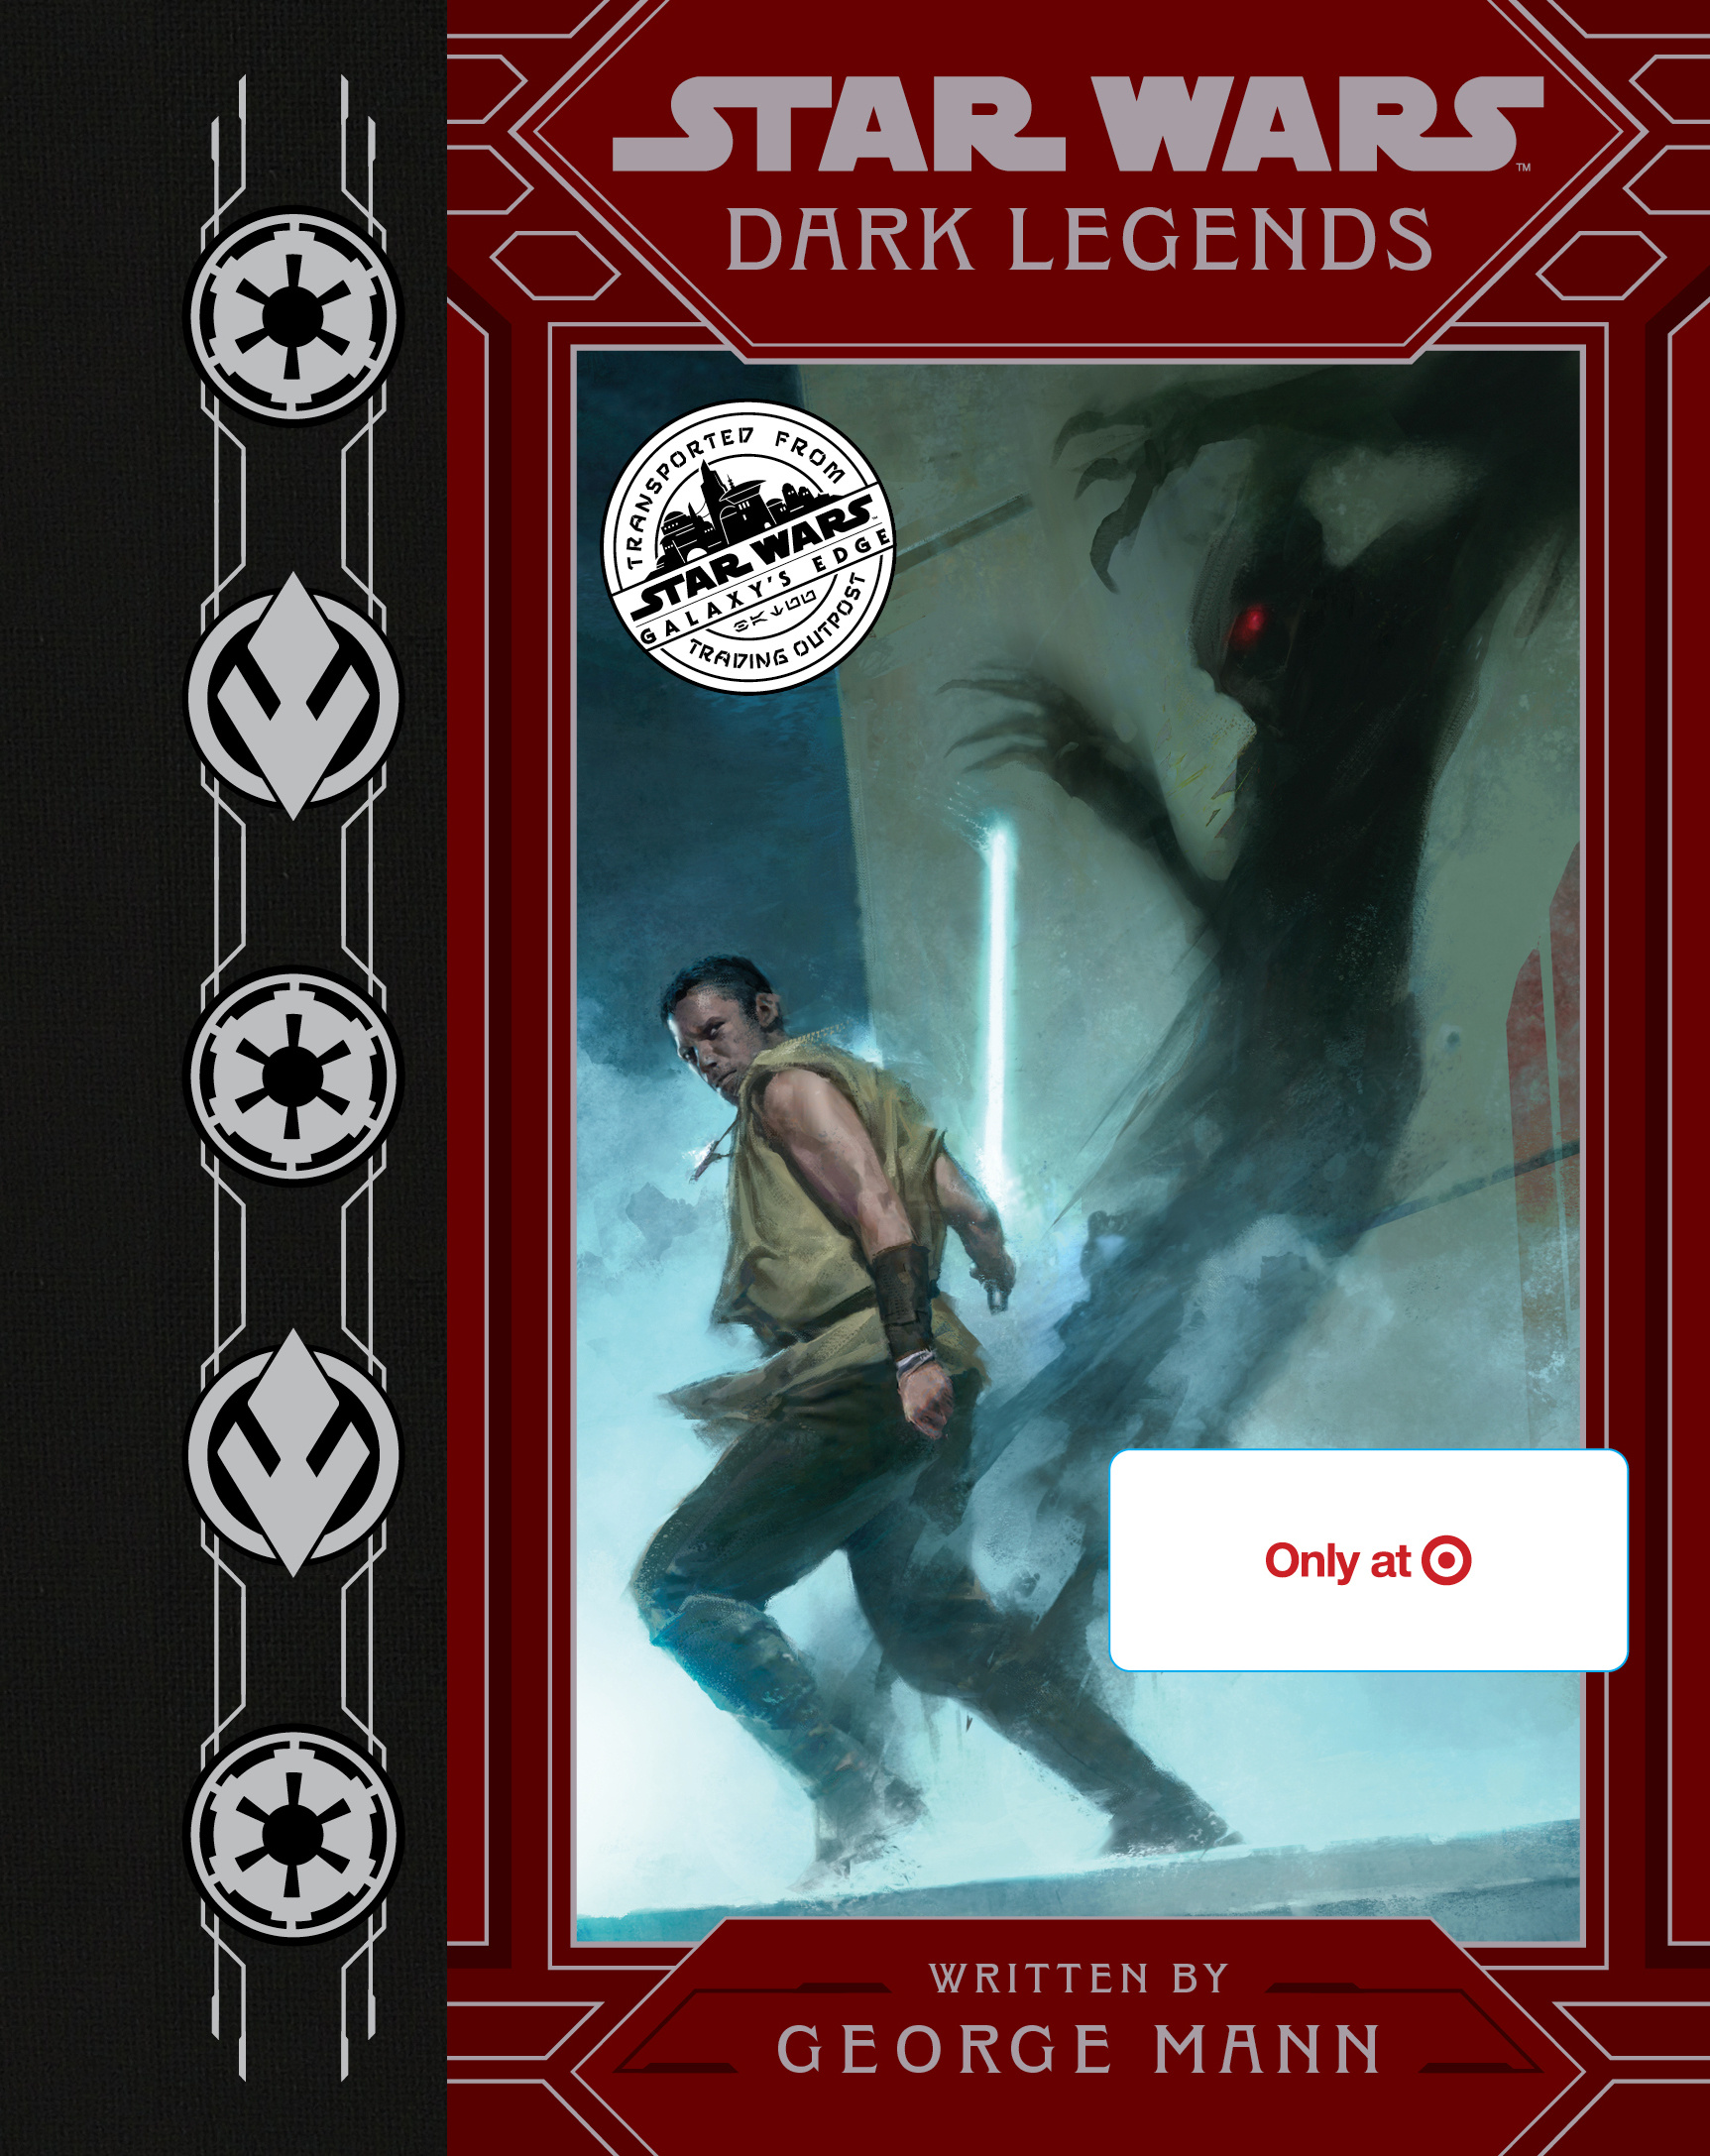 Okładka edycji specjalnej dostępnej w sieci Target – Dark Legends.